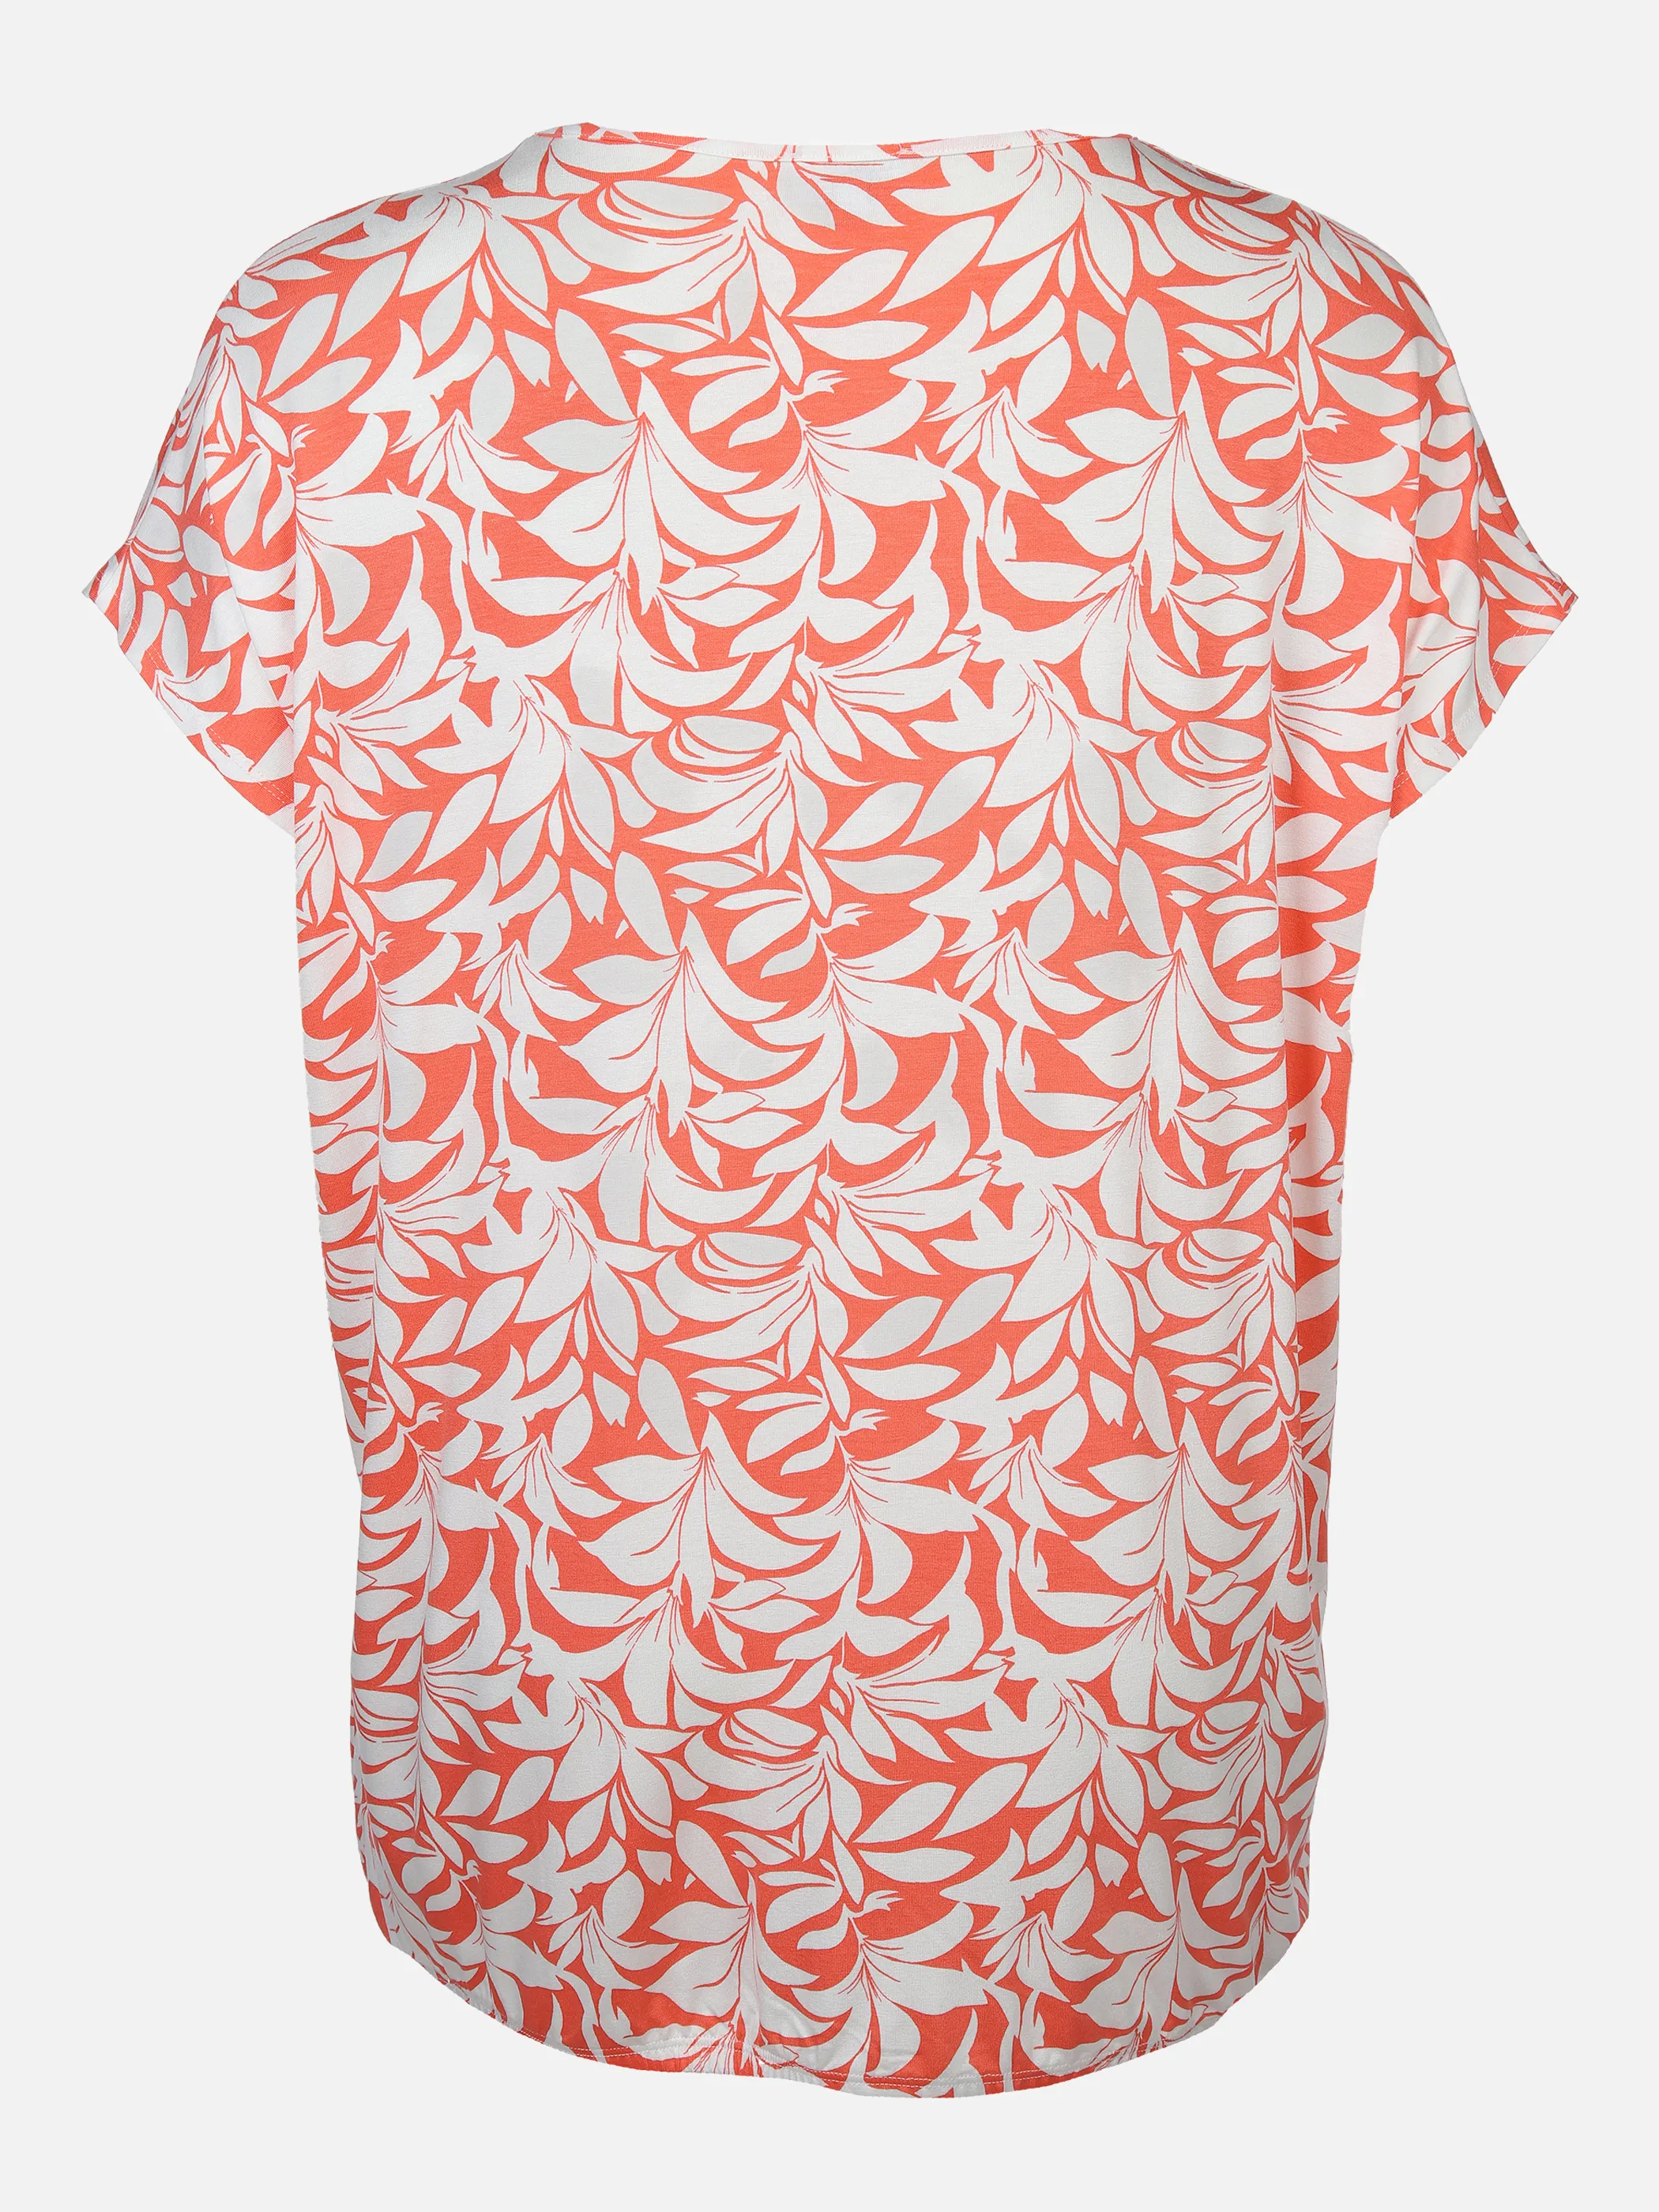 Sonja Blank Da-gr.Gr.T-Shirt m.Print Orange 878937 KORALLE/OF 2